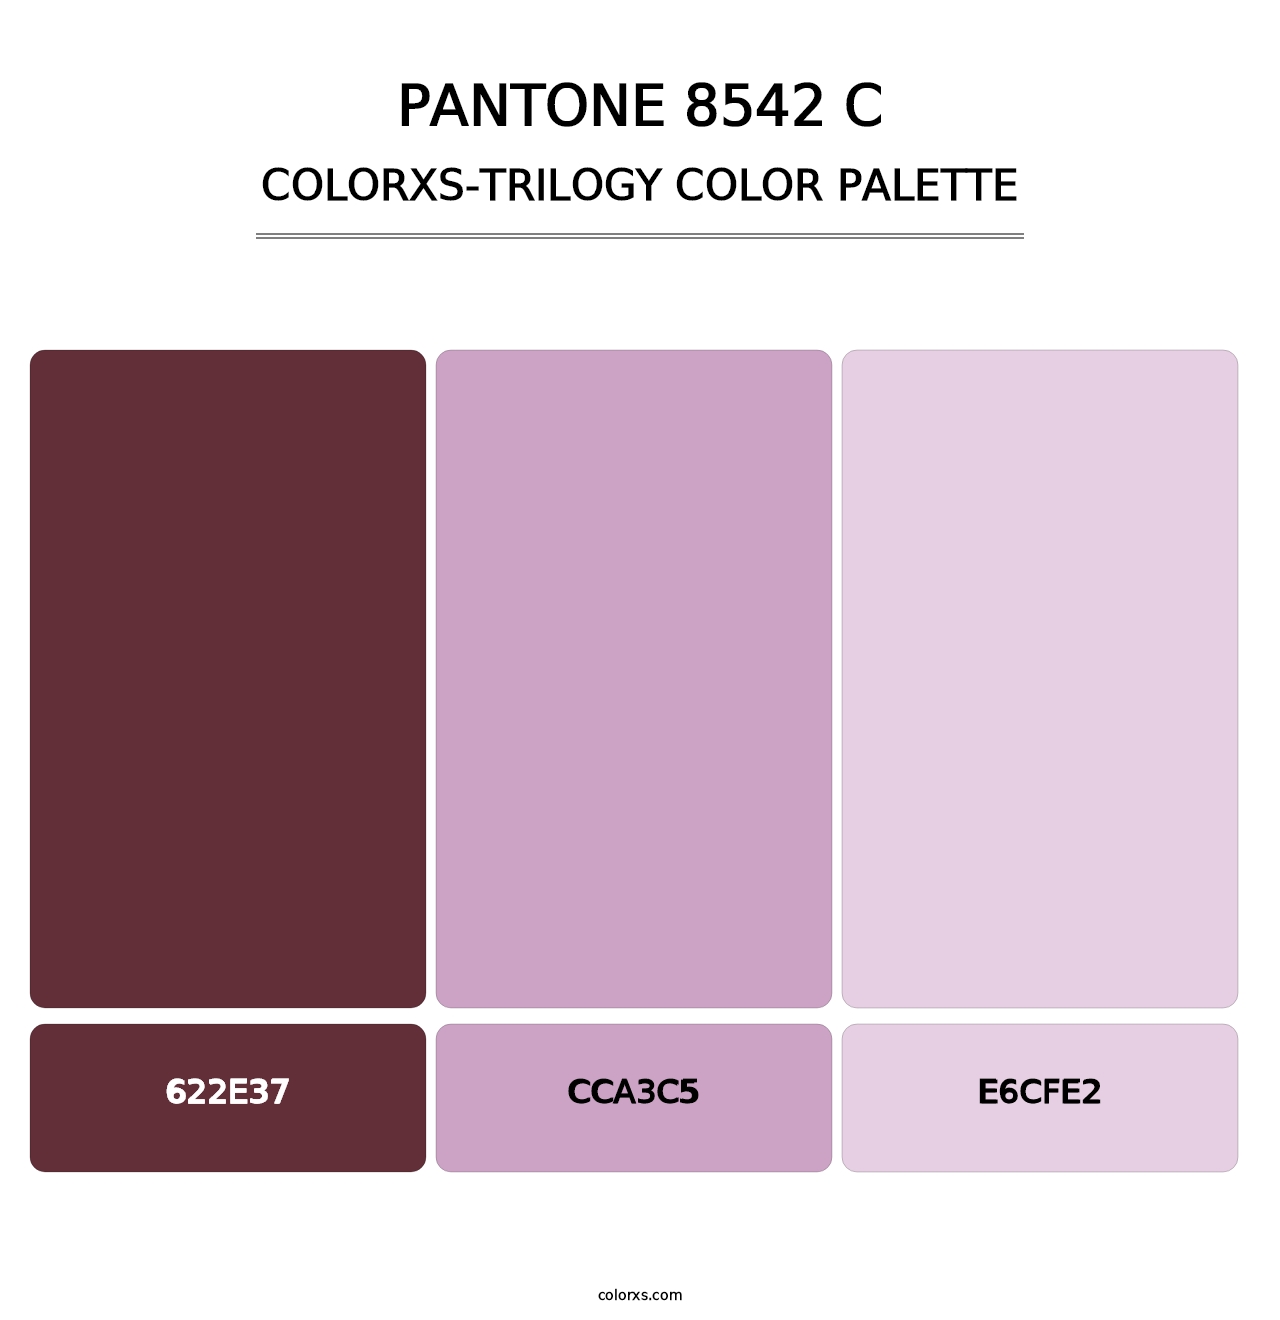 PANTONE 8542 C - Colorxs Trilogy Palette